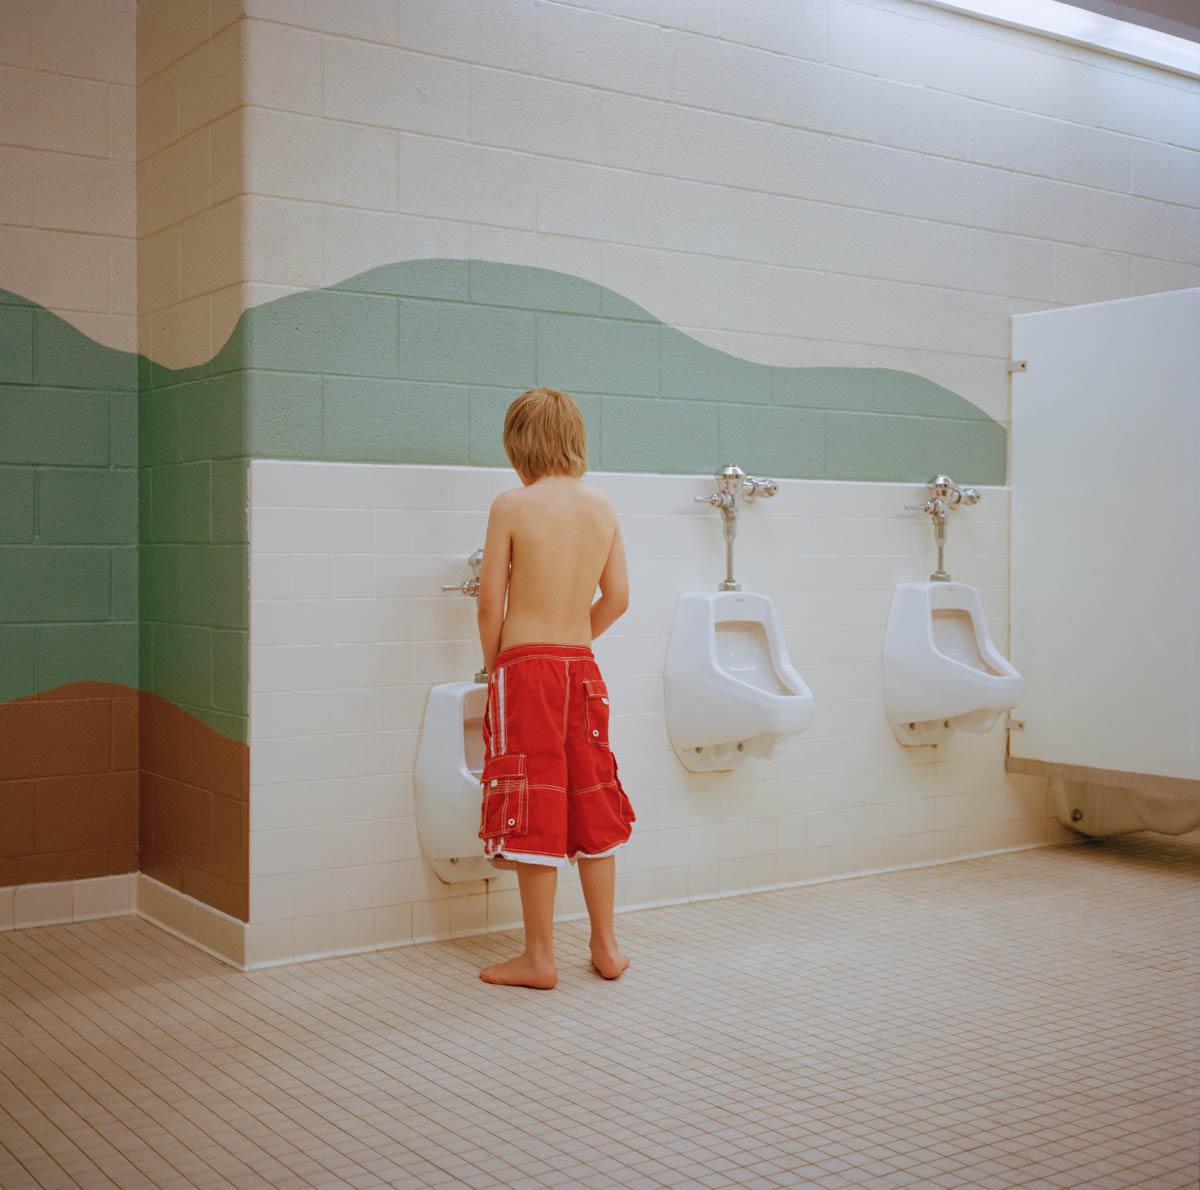 Pratt (Pool Urinal). Pleasant Grove, Utah 2014